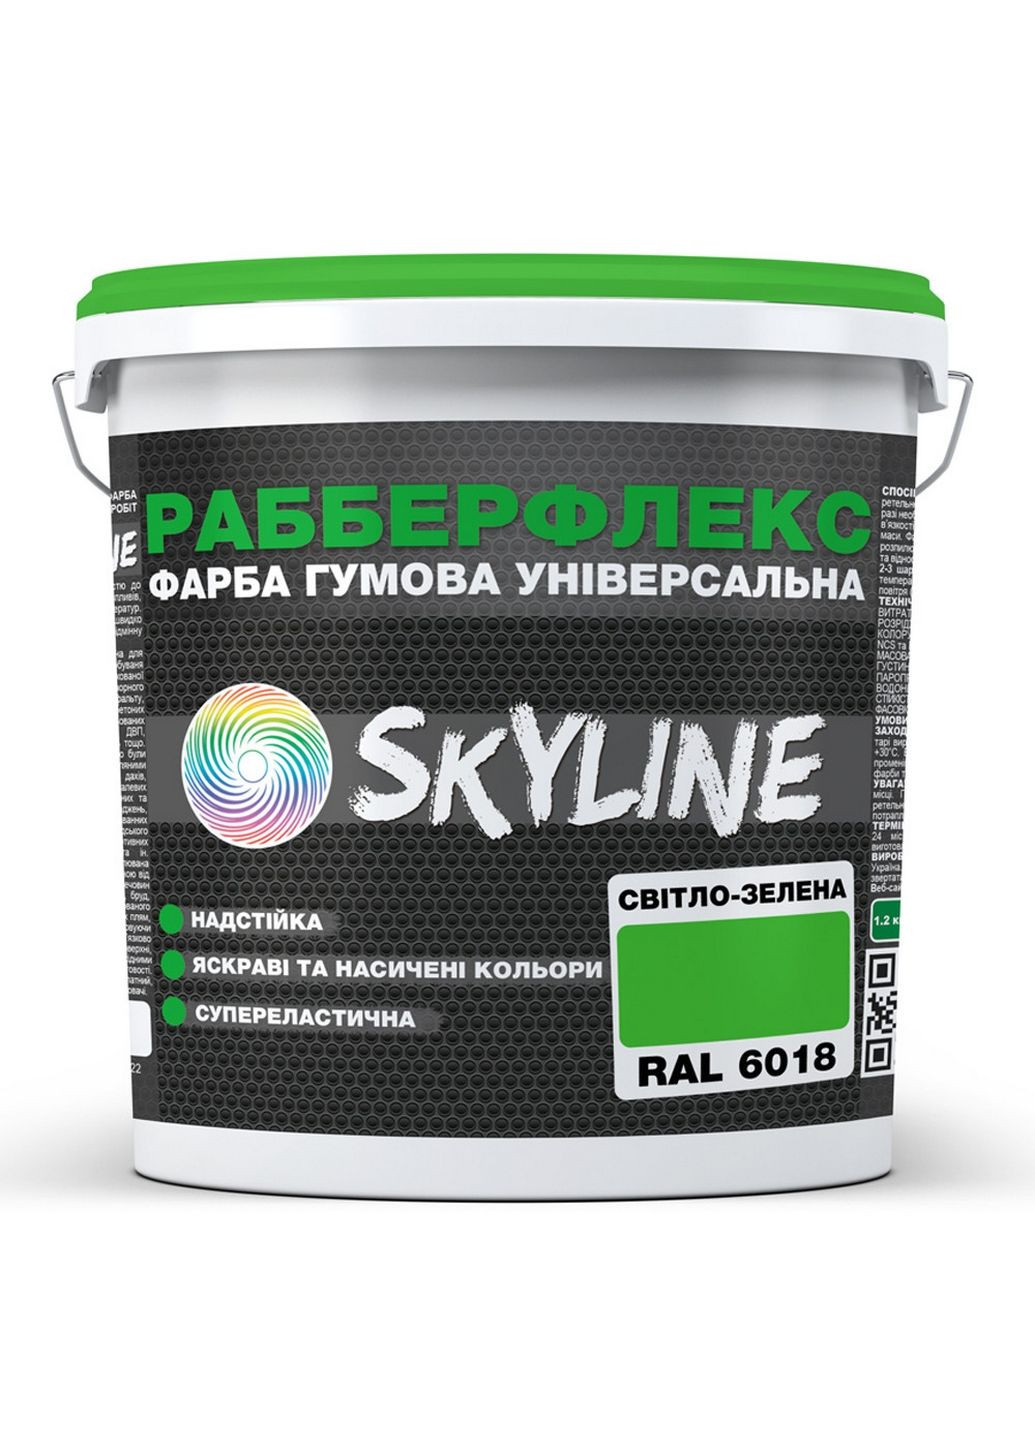 Надстійка фарба гумова супереластична «РабберФлекс» 12 кг SkyLine (289461354)